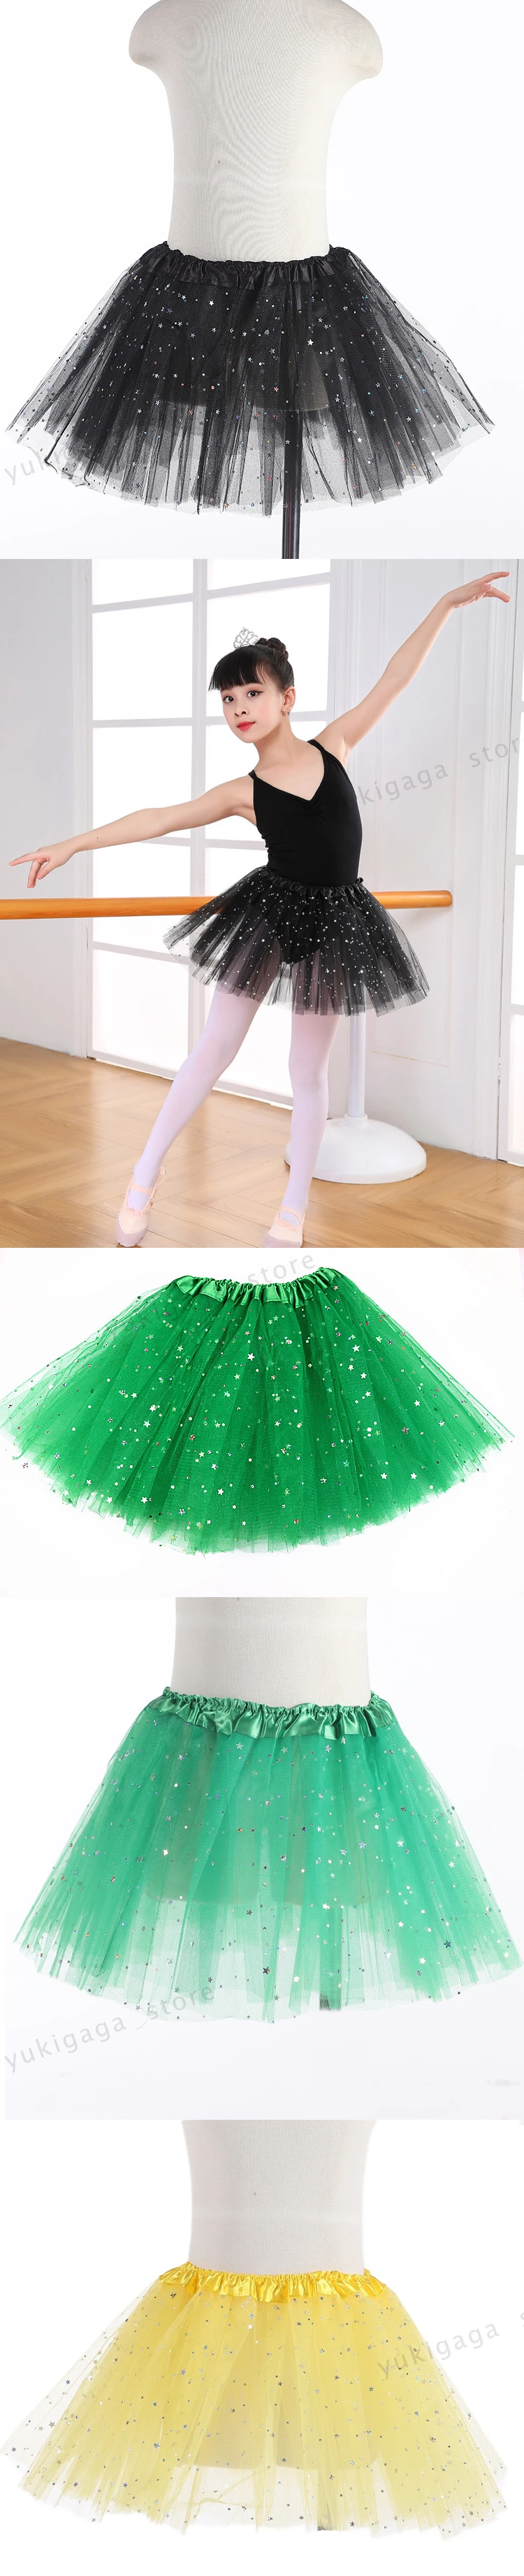 B3c балетное платье-пачка; гимнастическое трико для девочек; танцевальная одежда; одежда для детского балета; балерина; костюм; балетные пачки со скидкой